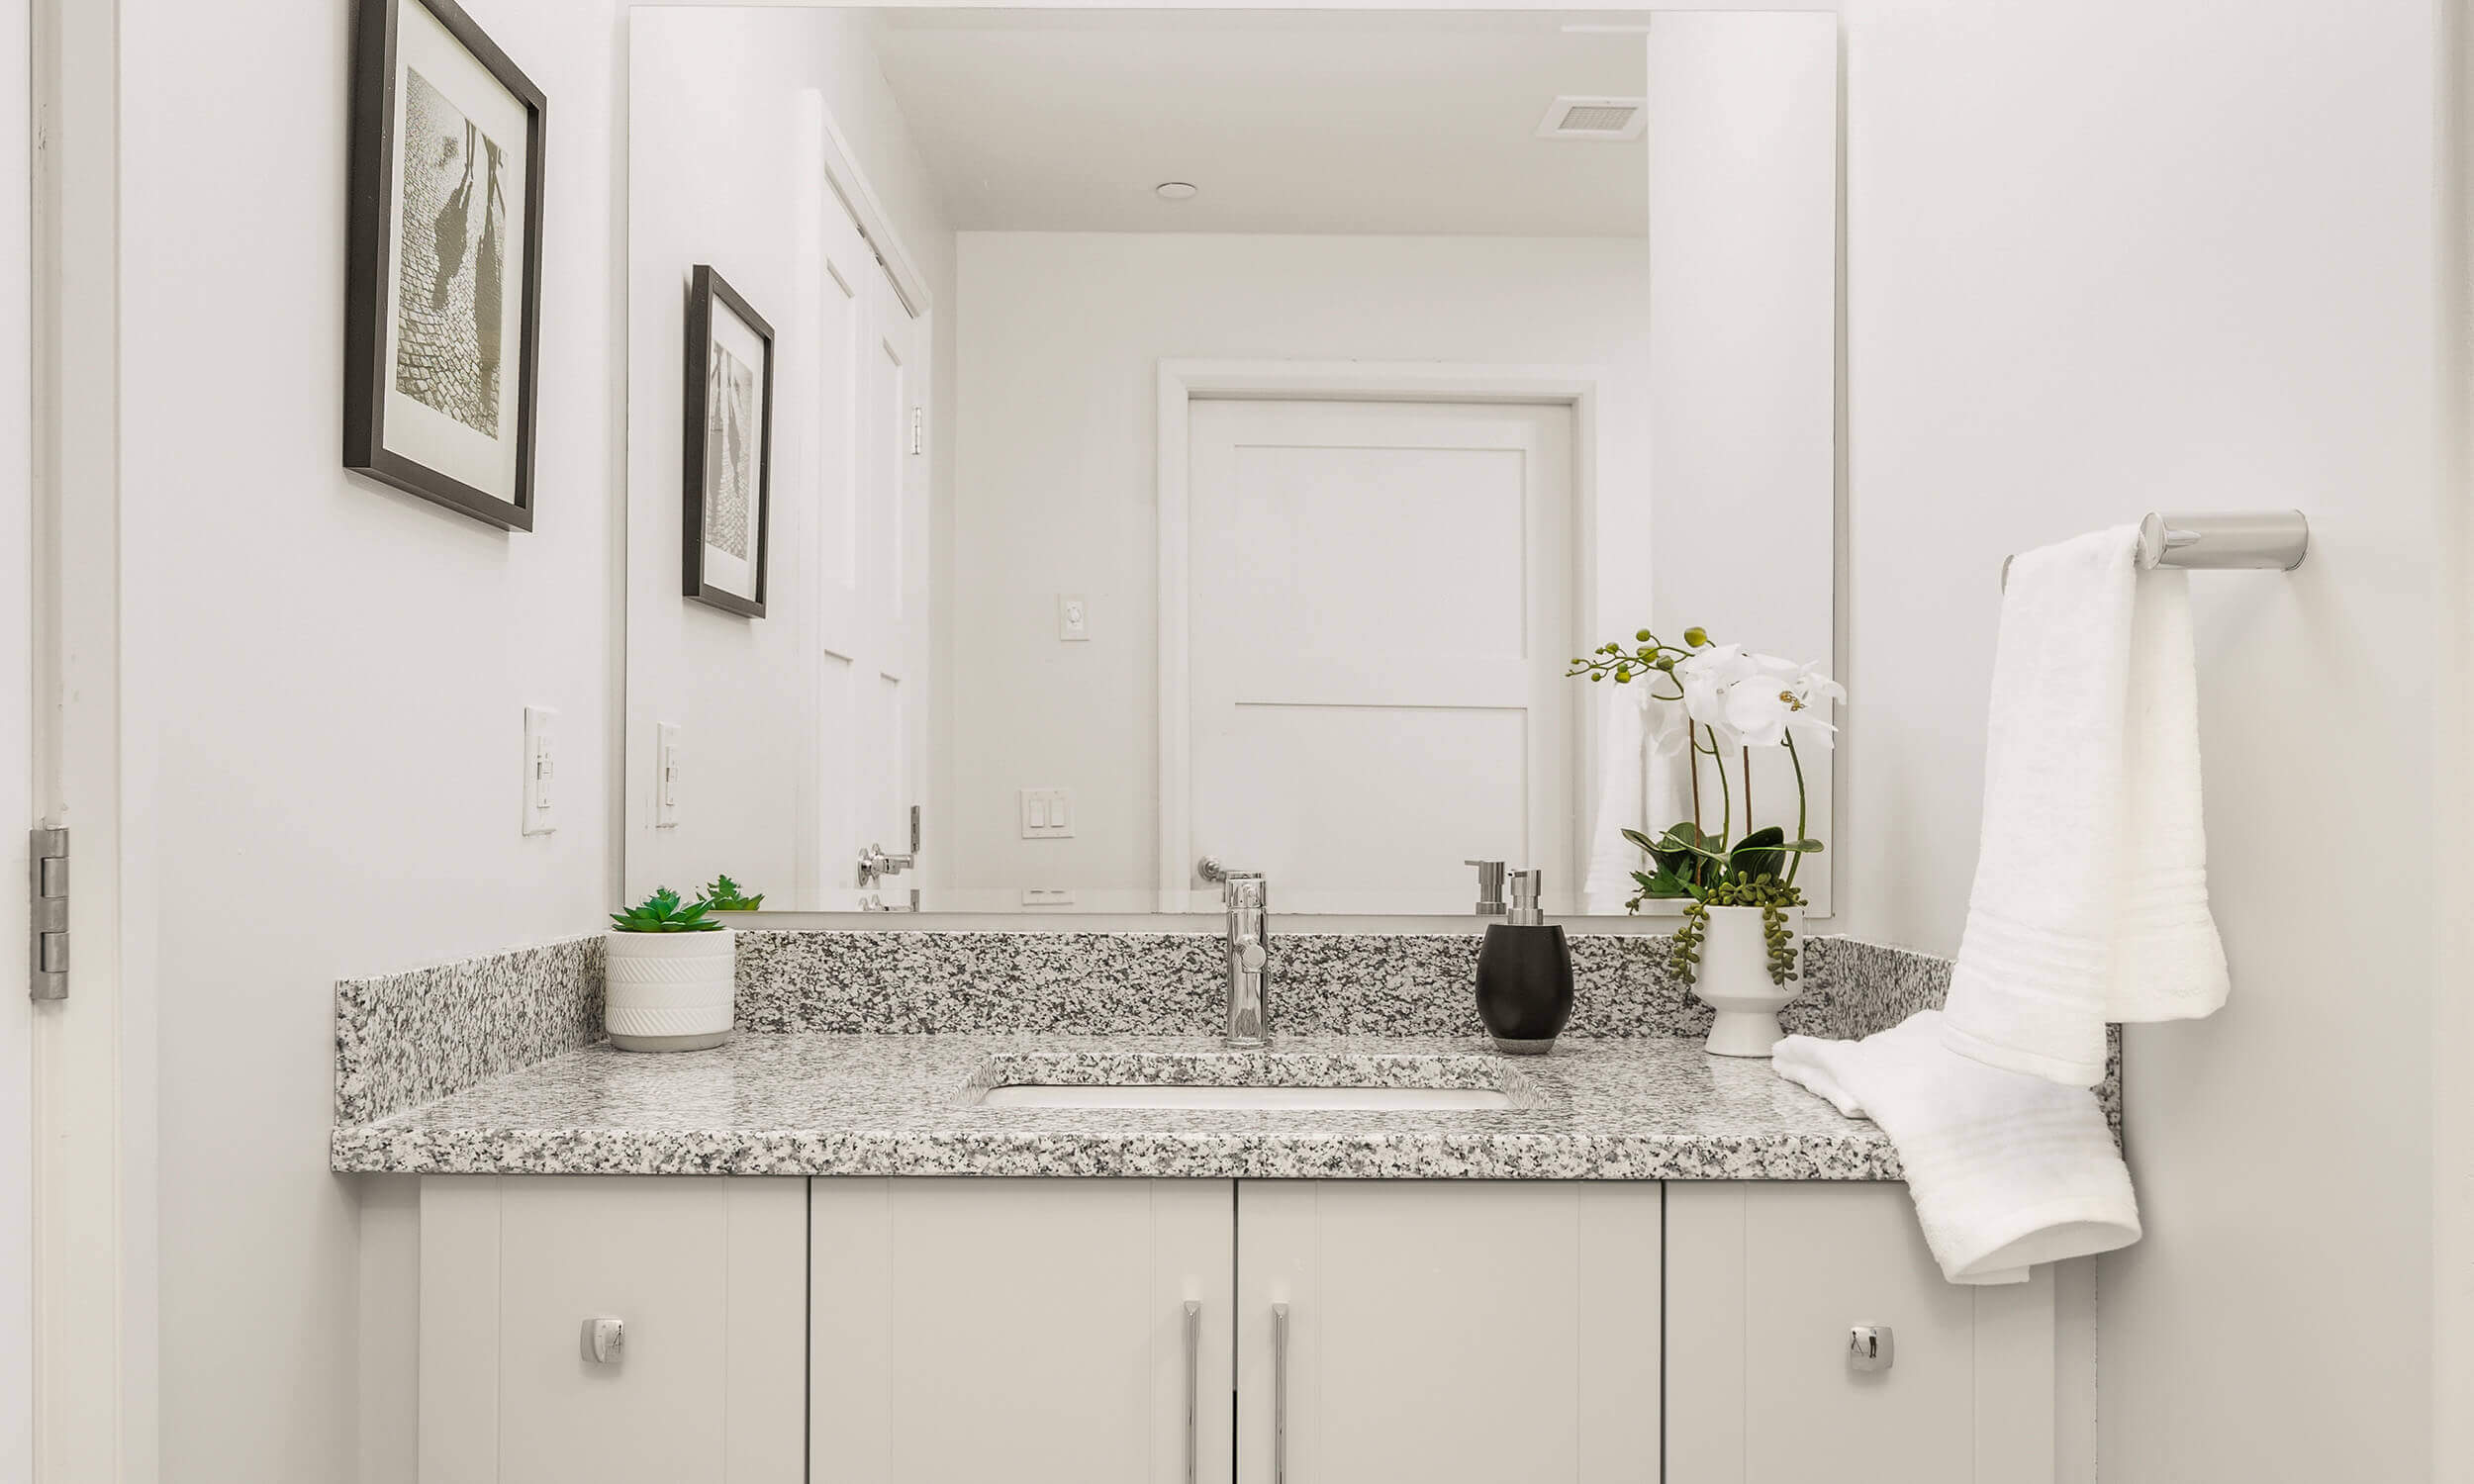 Modern-looking white vanity with grey granite countertop